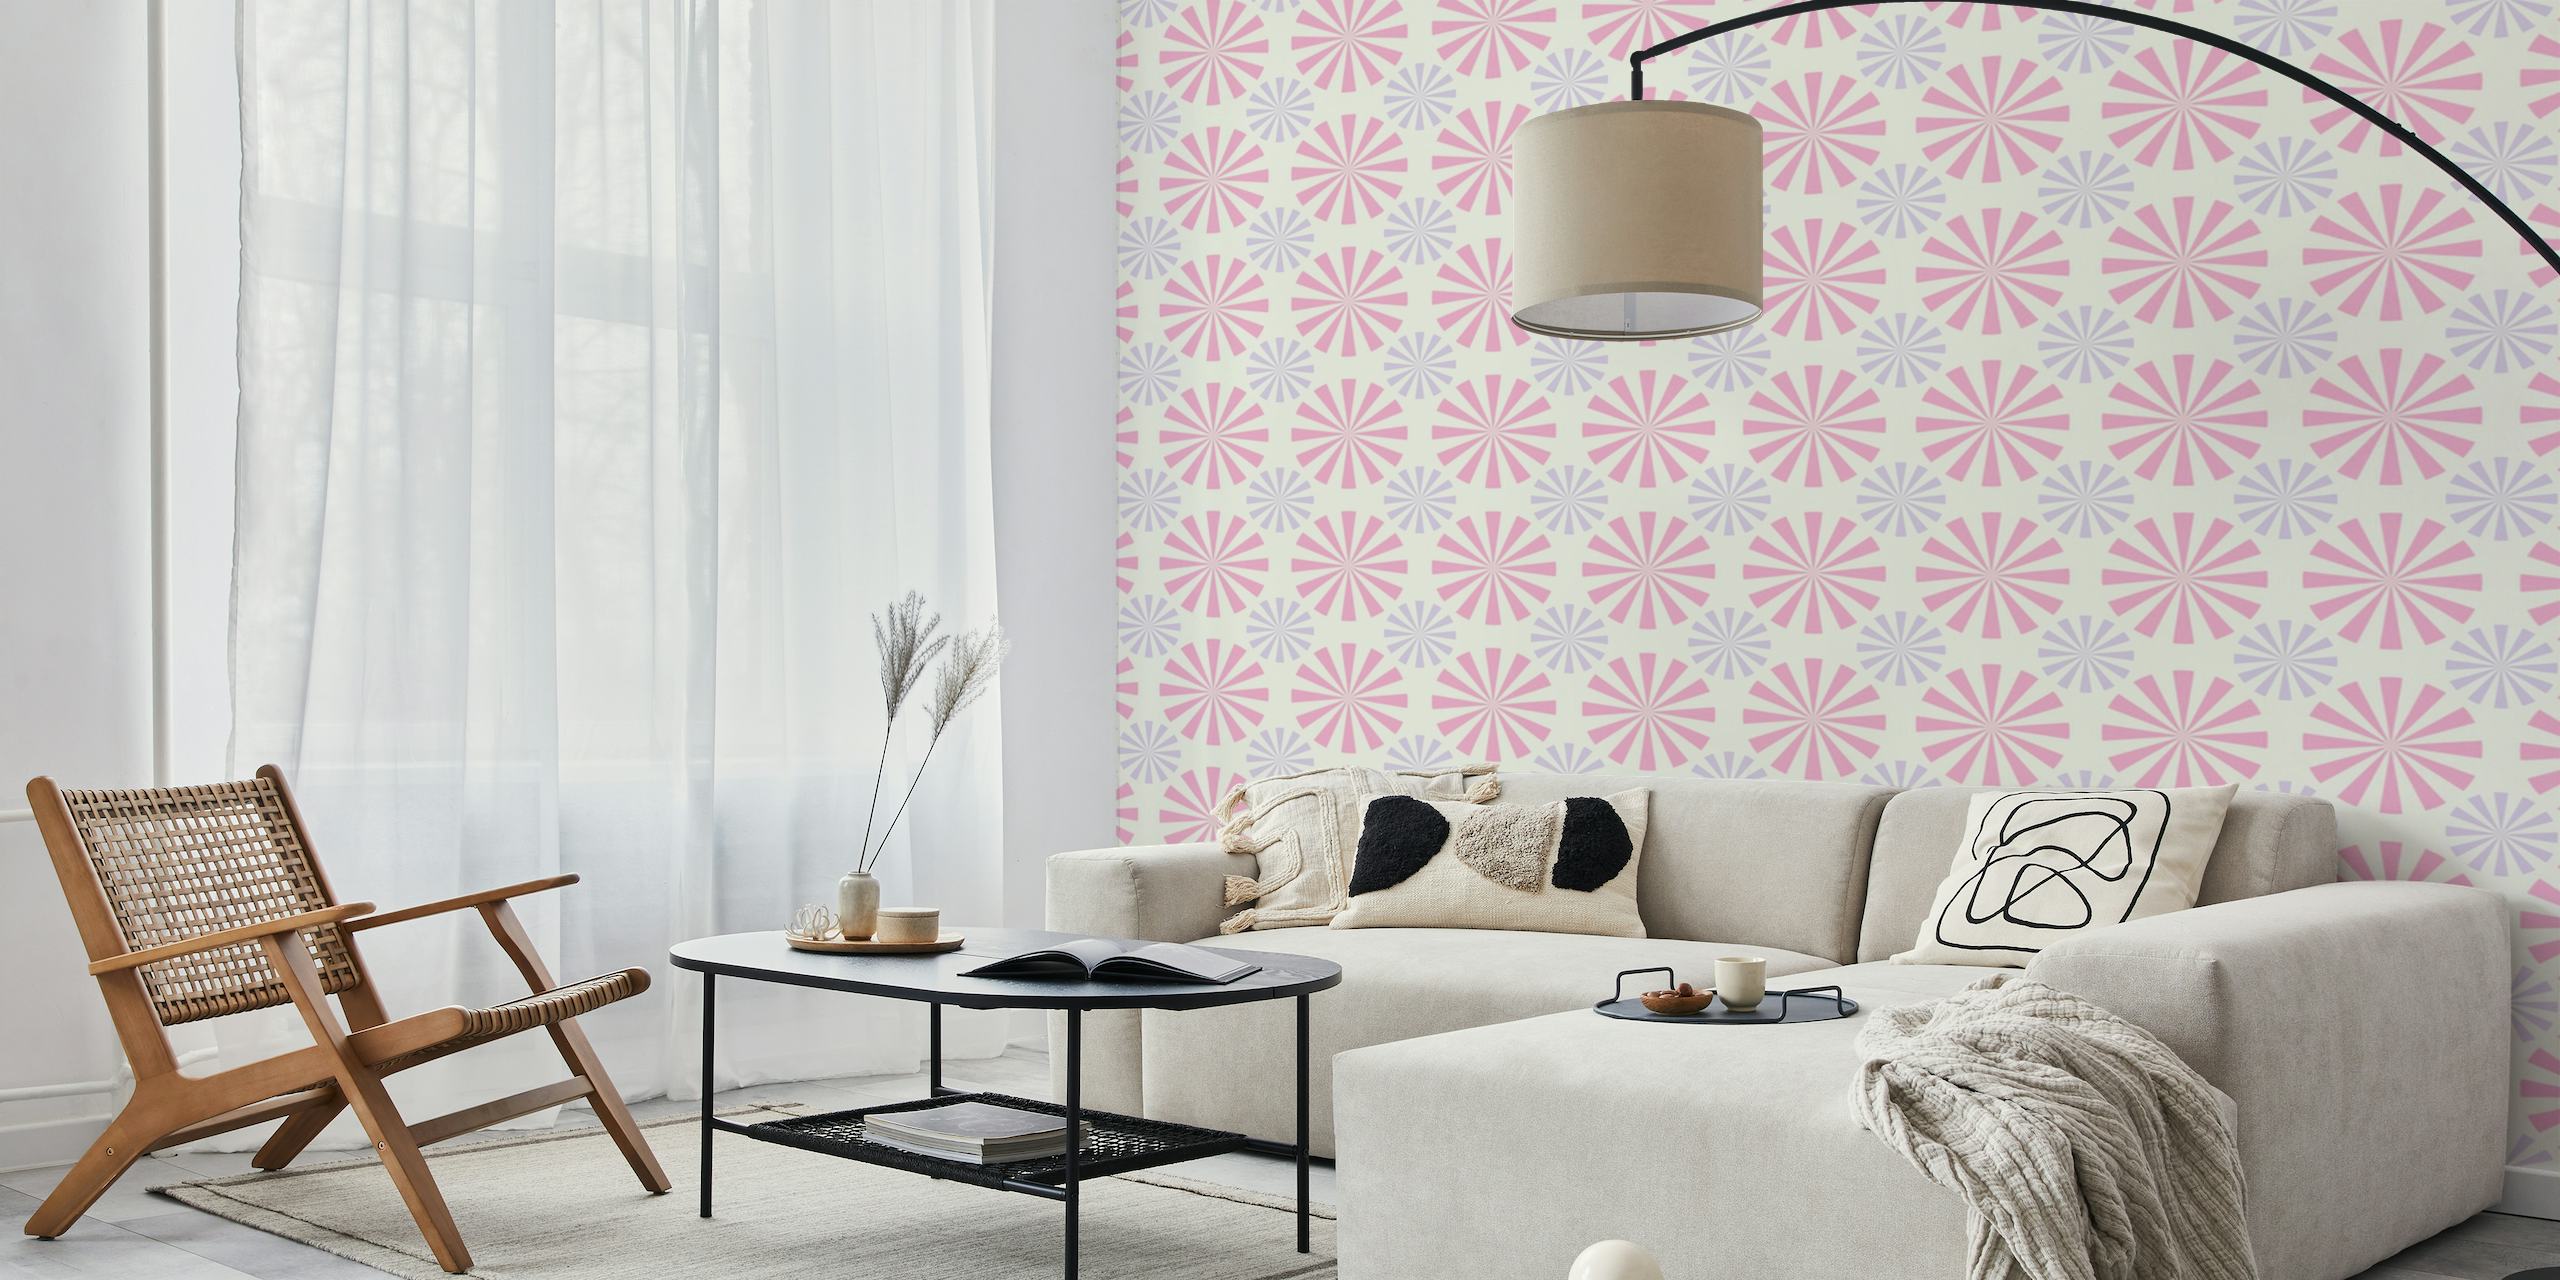 Pastel pink retro pattern wallpaper